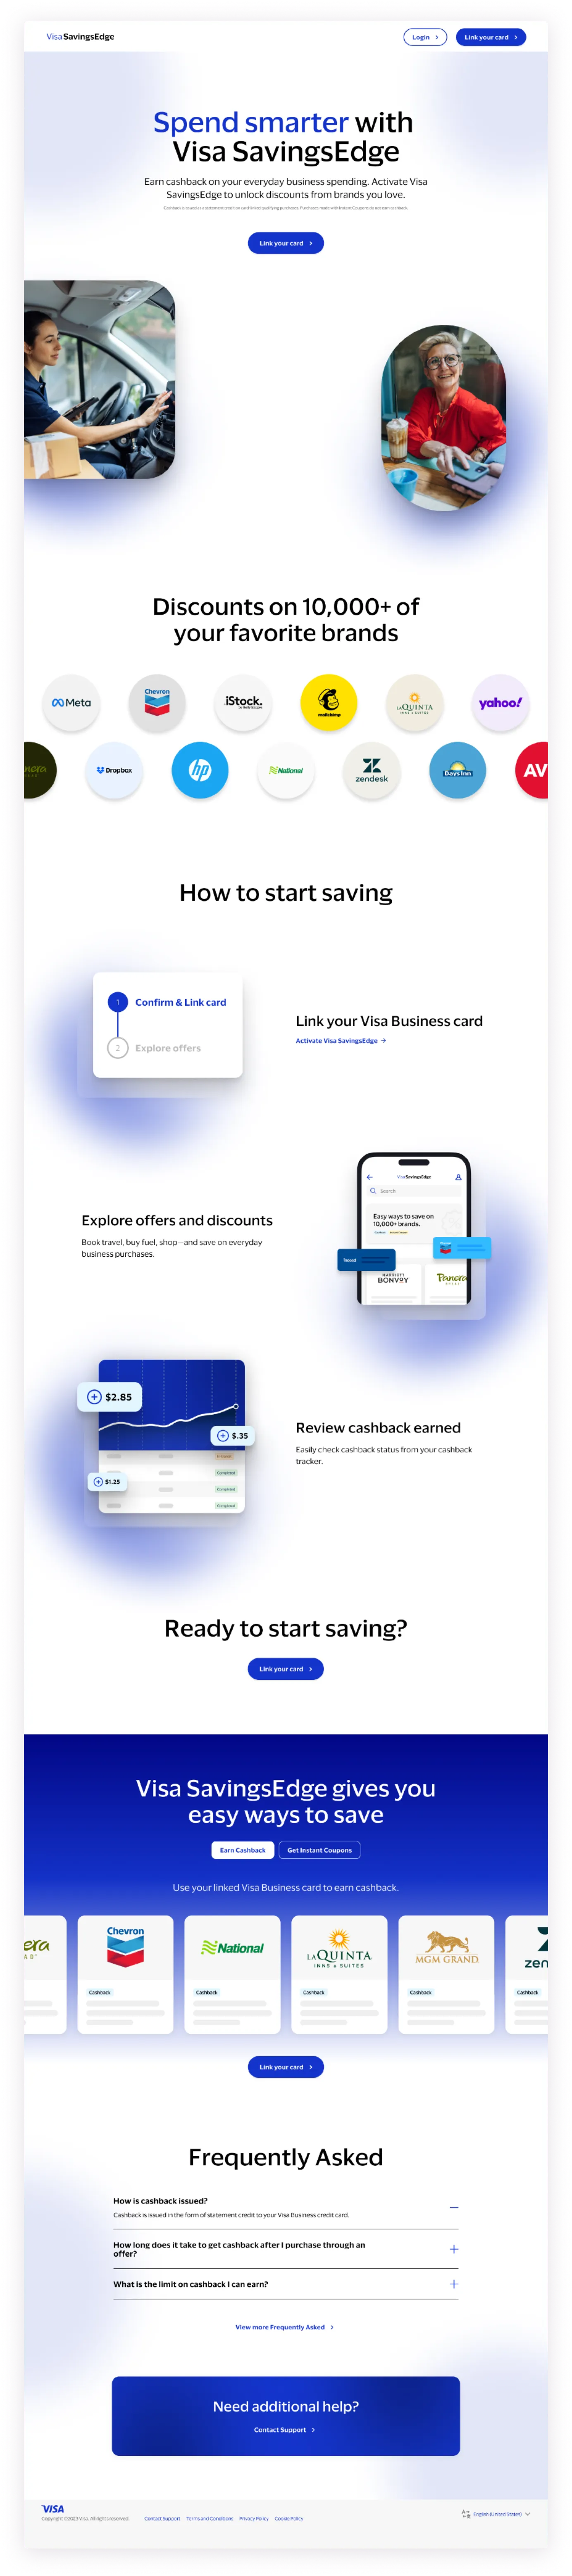 sam-small-design-visa-savingsedge-case-study-marketing-home-page-long-v01